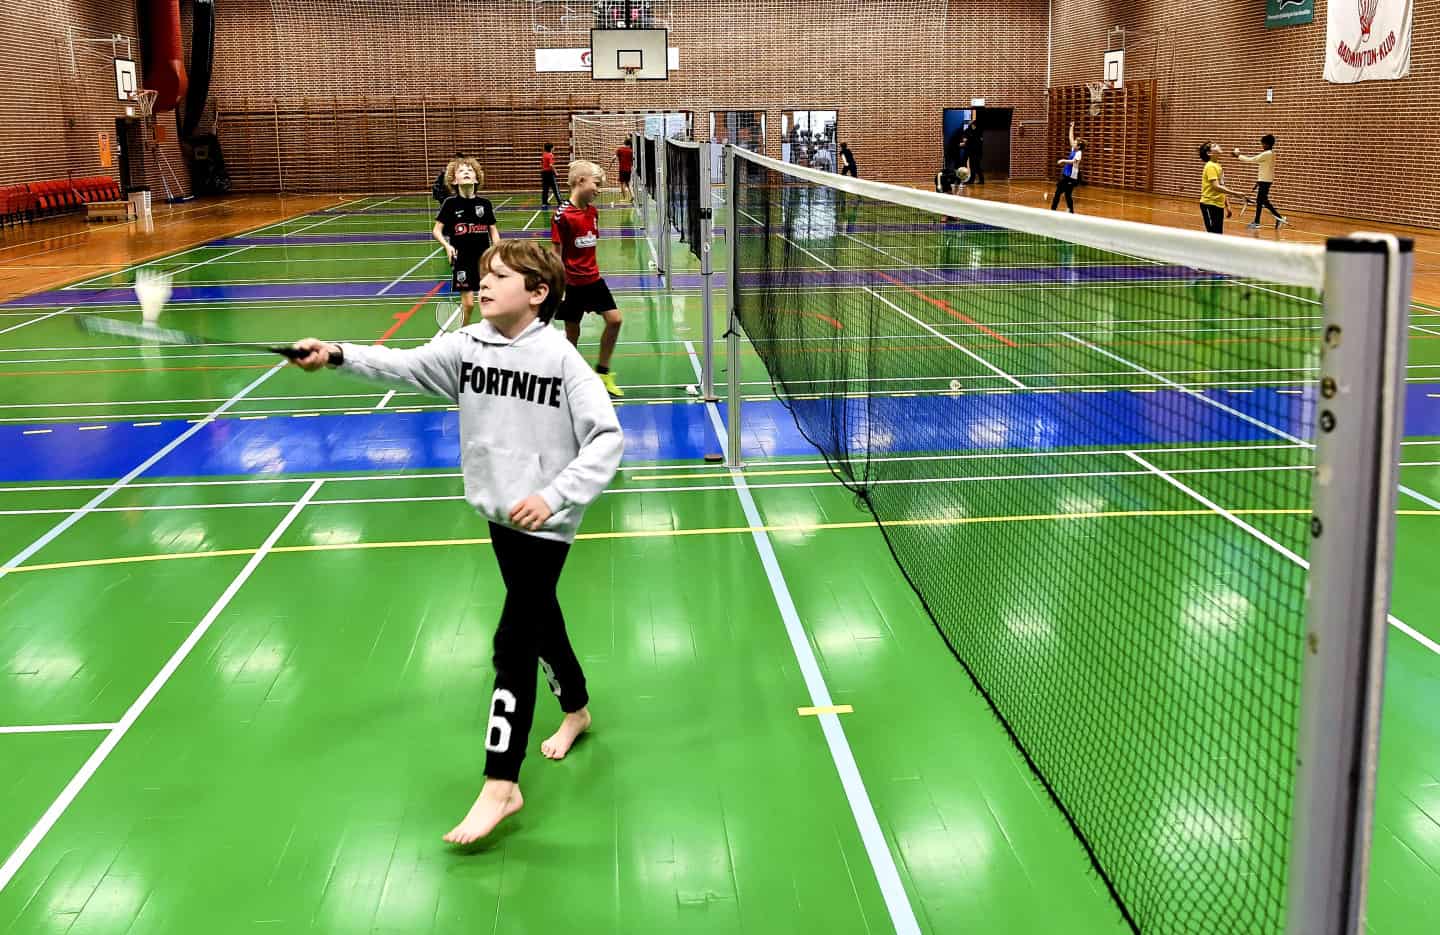 Husk weekend forhandler Sport: Ligakamp i badminton i Grindsted | ugeavisen.dk